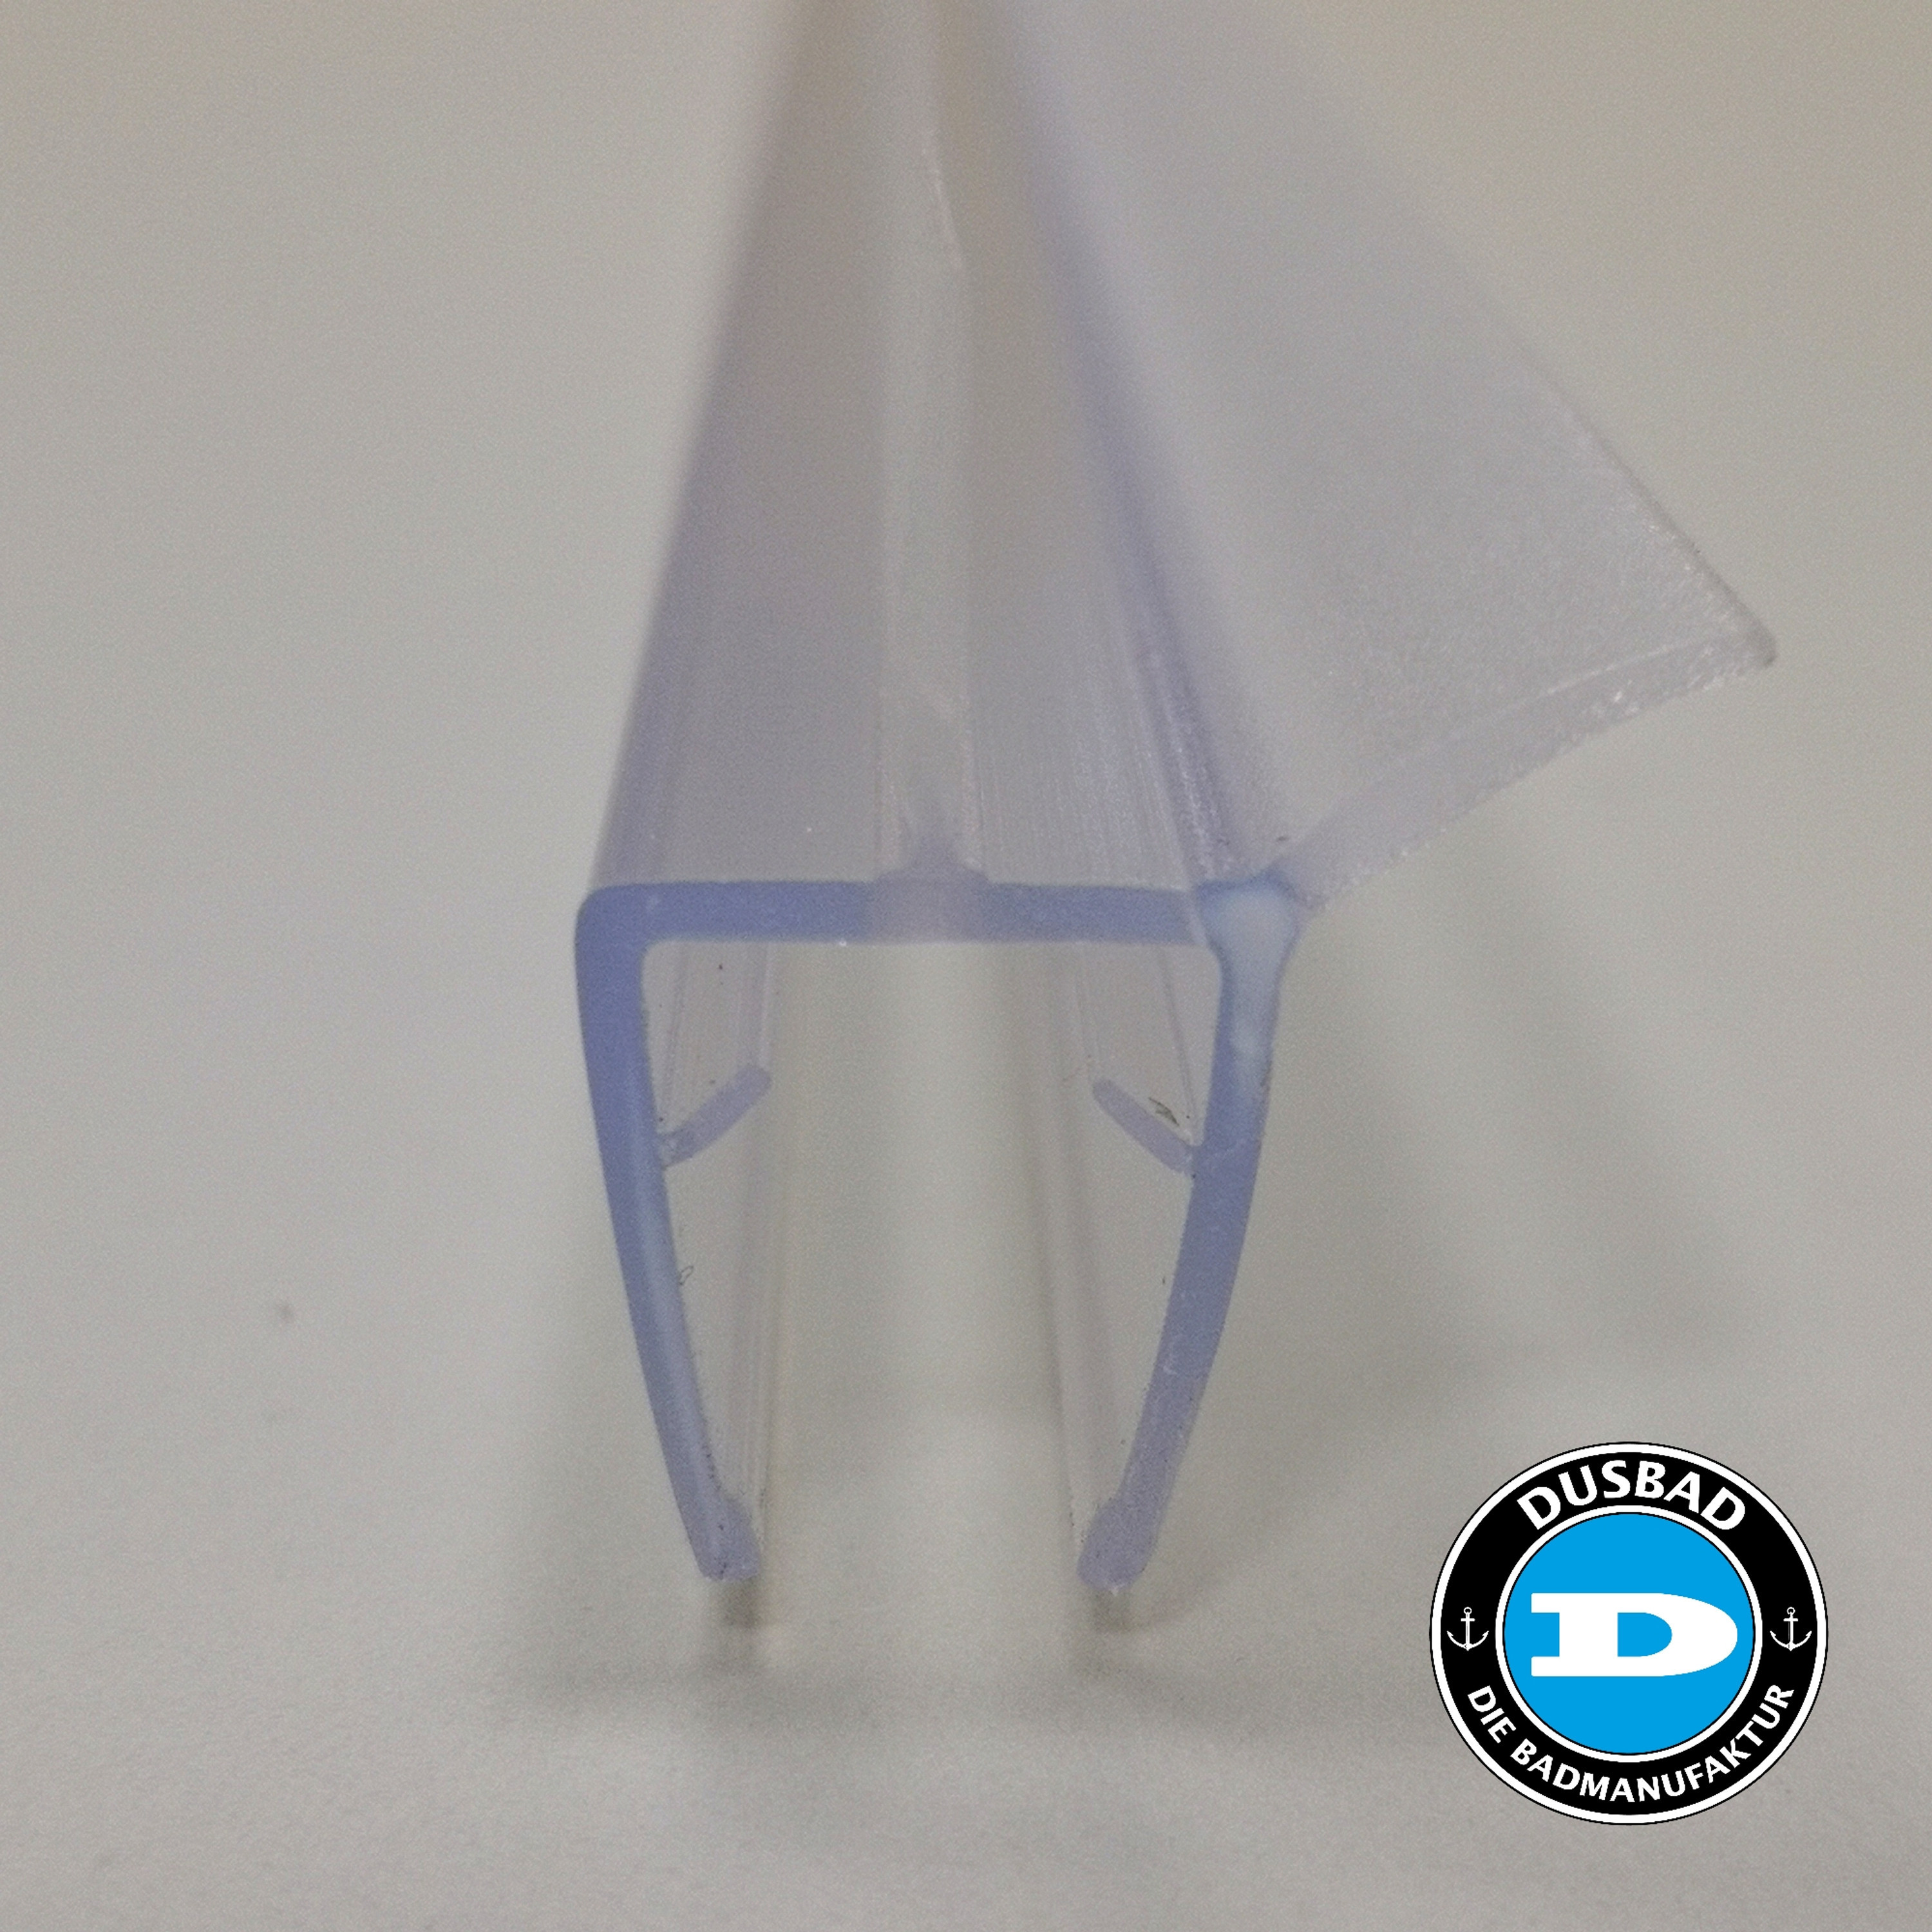 Dusbad Wasserabweiser/ Dichtung 1000mm für 8mm Glas - Duschabtrennungen/ Duschkabinen